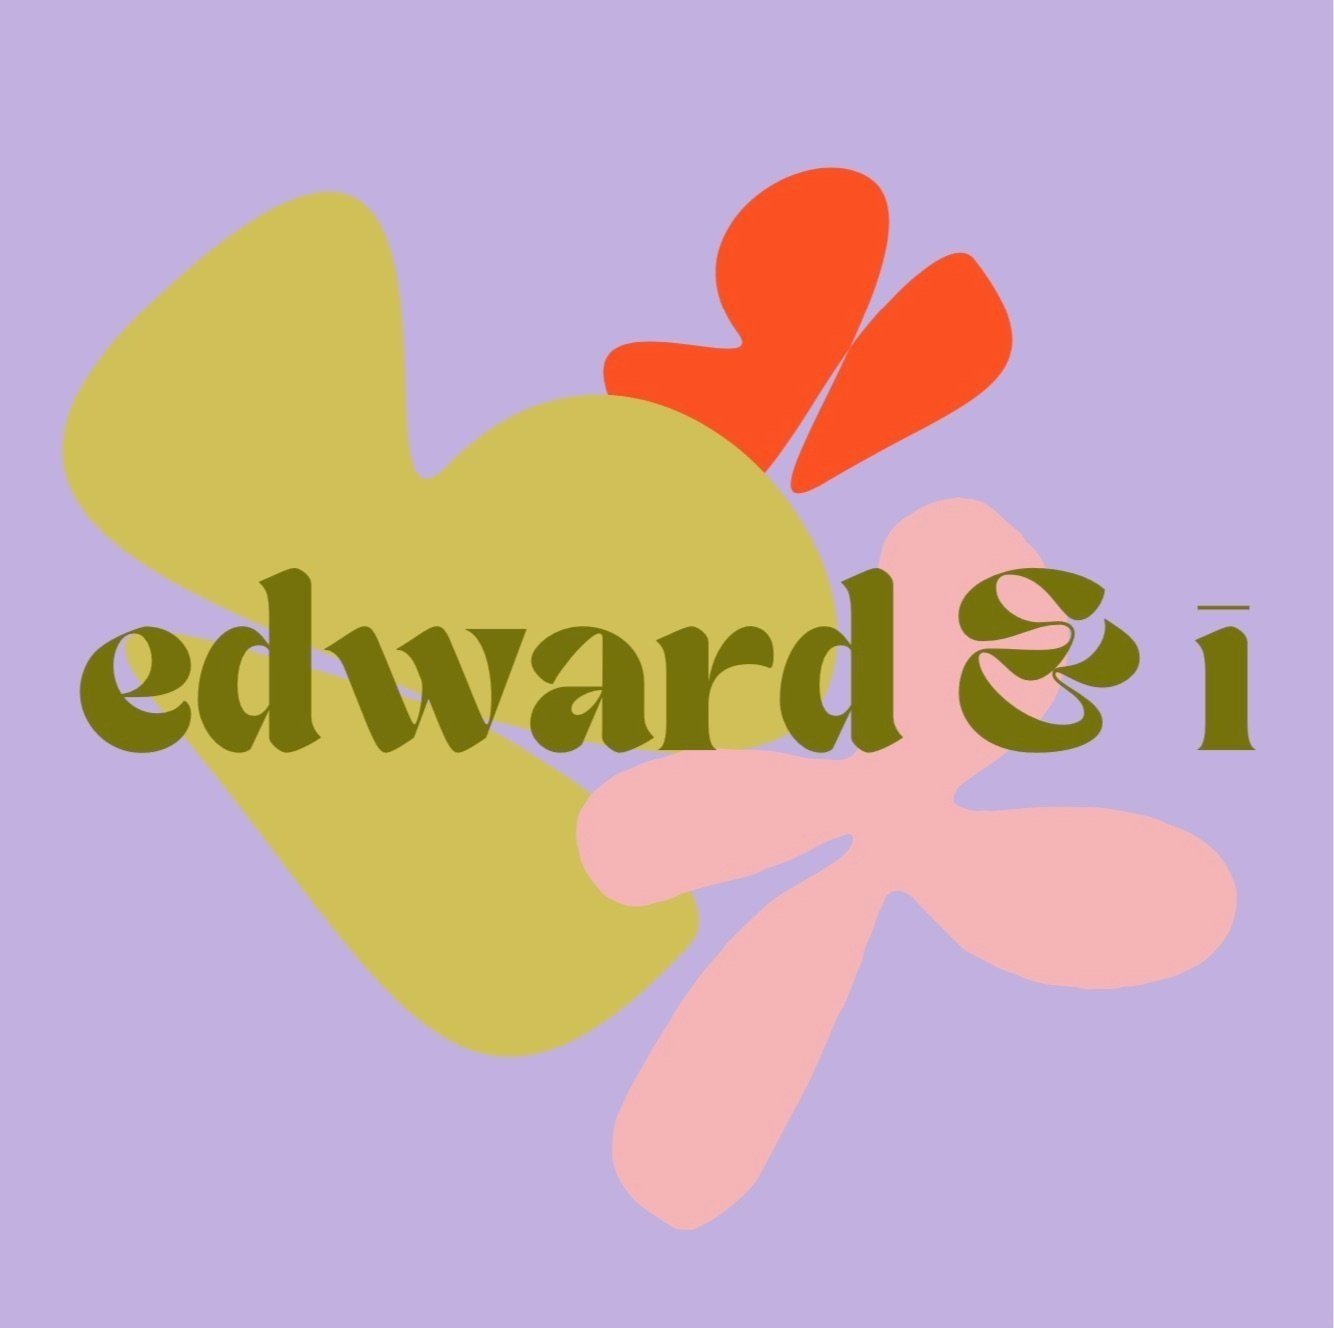 Edward & I.